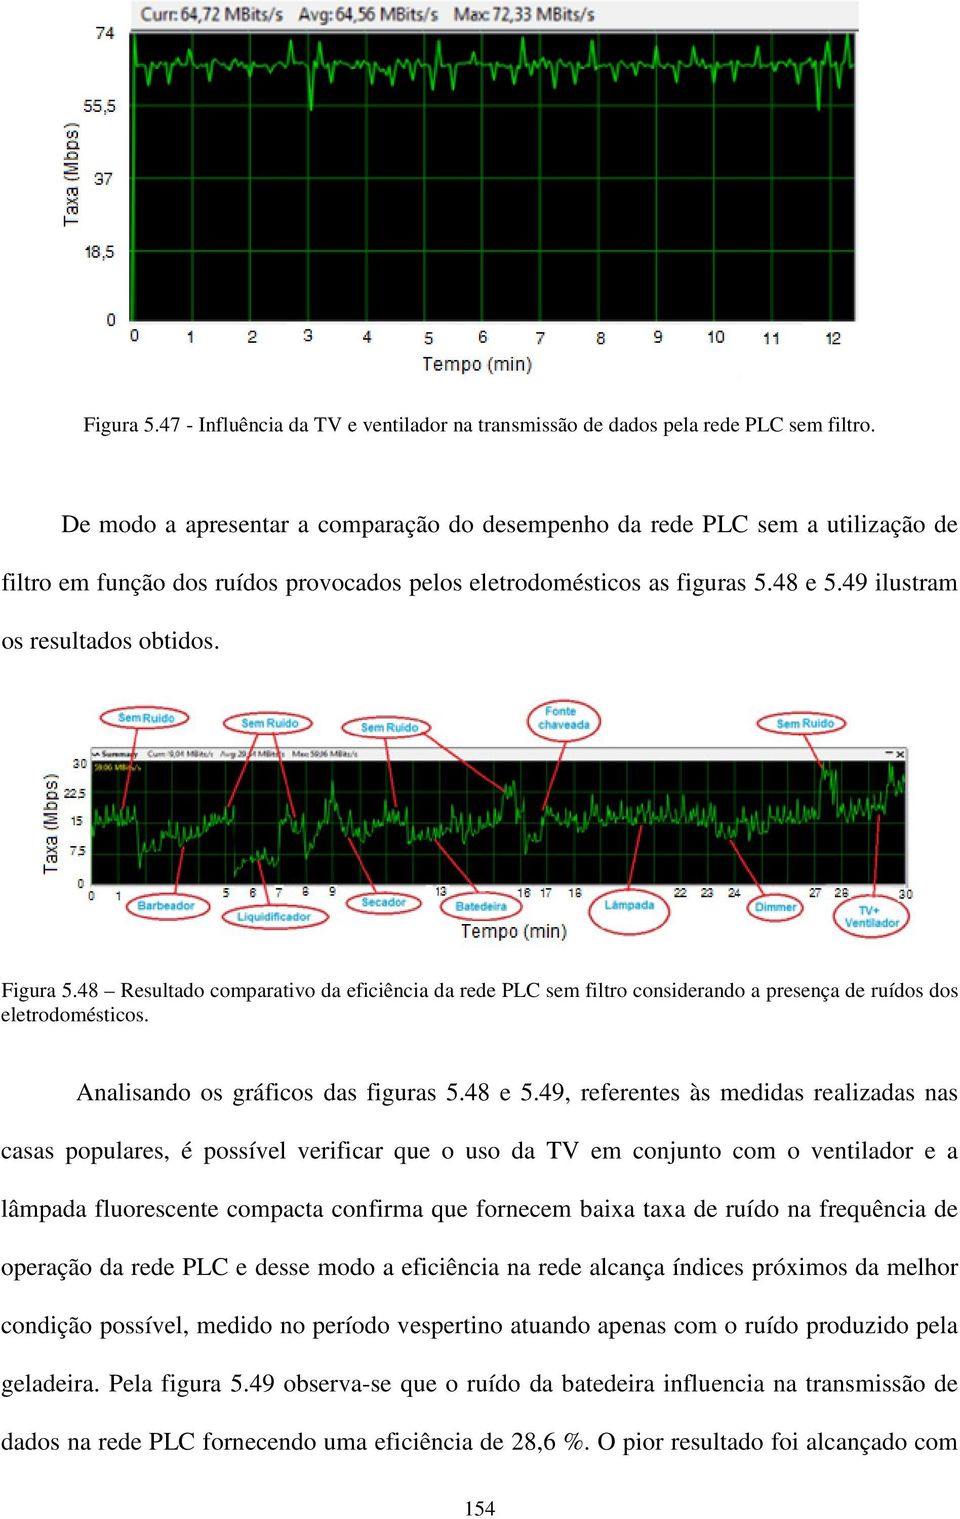 Figura 5.48 Resultado comparativo da eficiência da rede PLC sem filtro considerando a presença de ruídos dos eletrodomésticos. Analisando os gráficos das figuras 5.48 e 5.